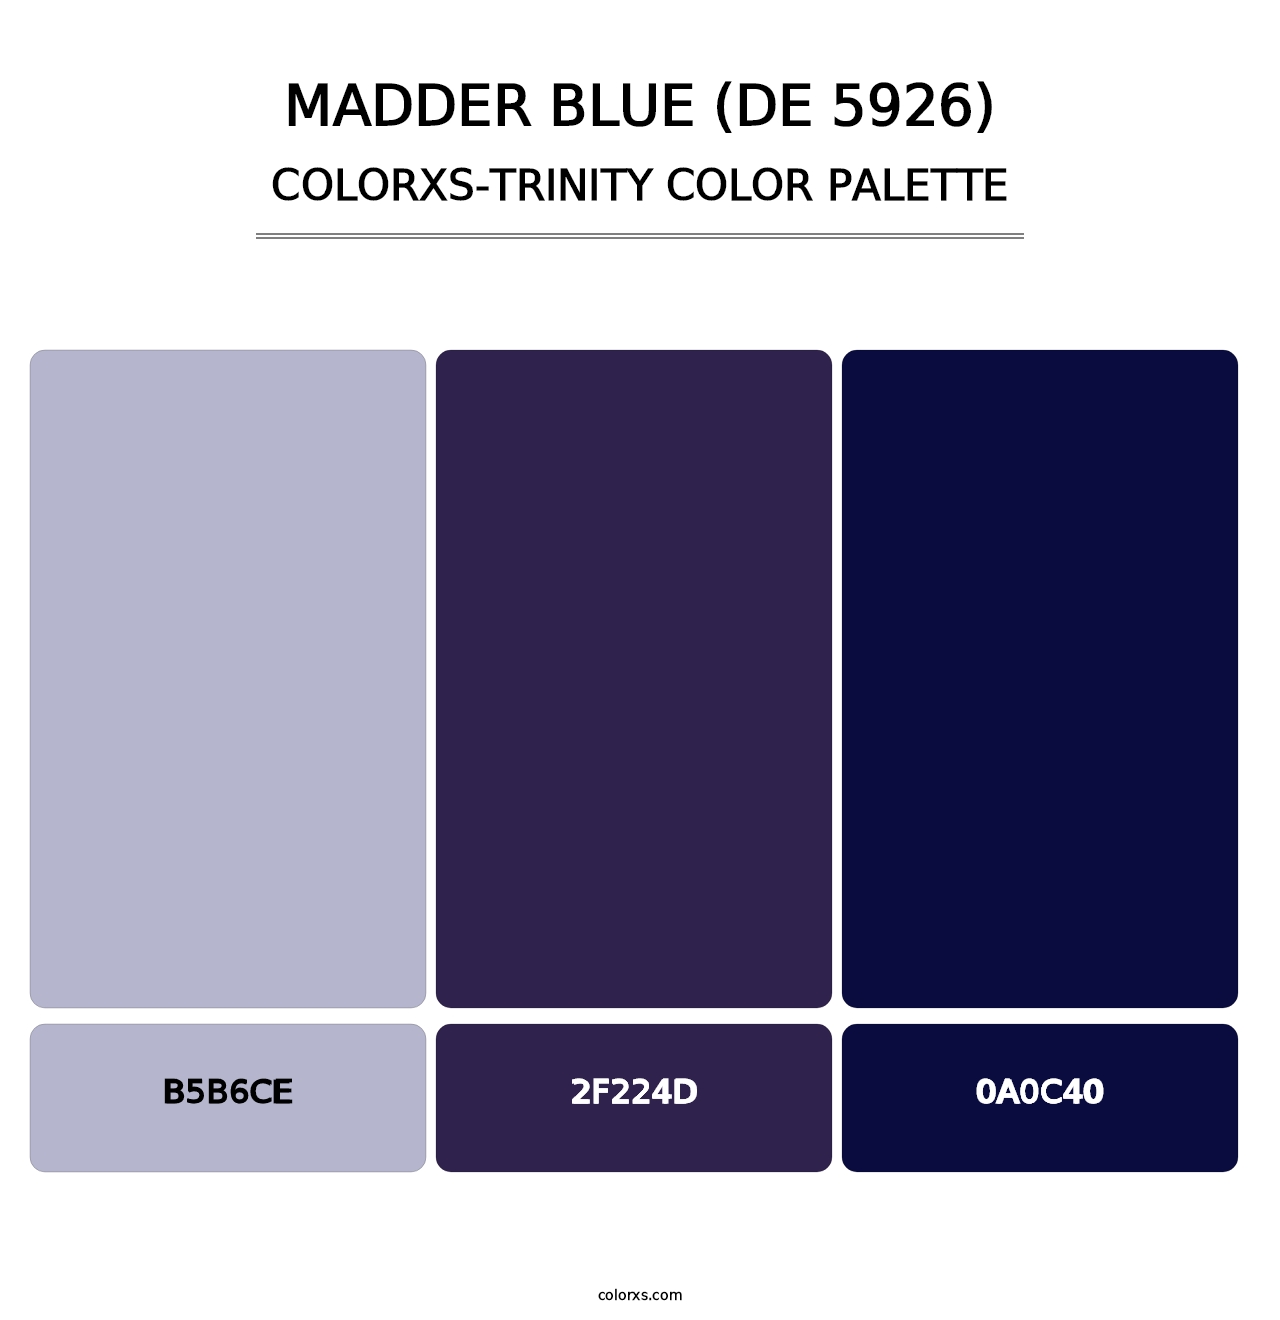 Madder Blue (DE 5926) - Colorxs Trinity Palette